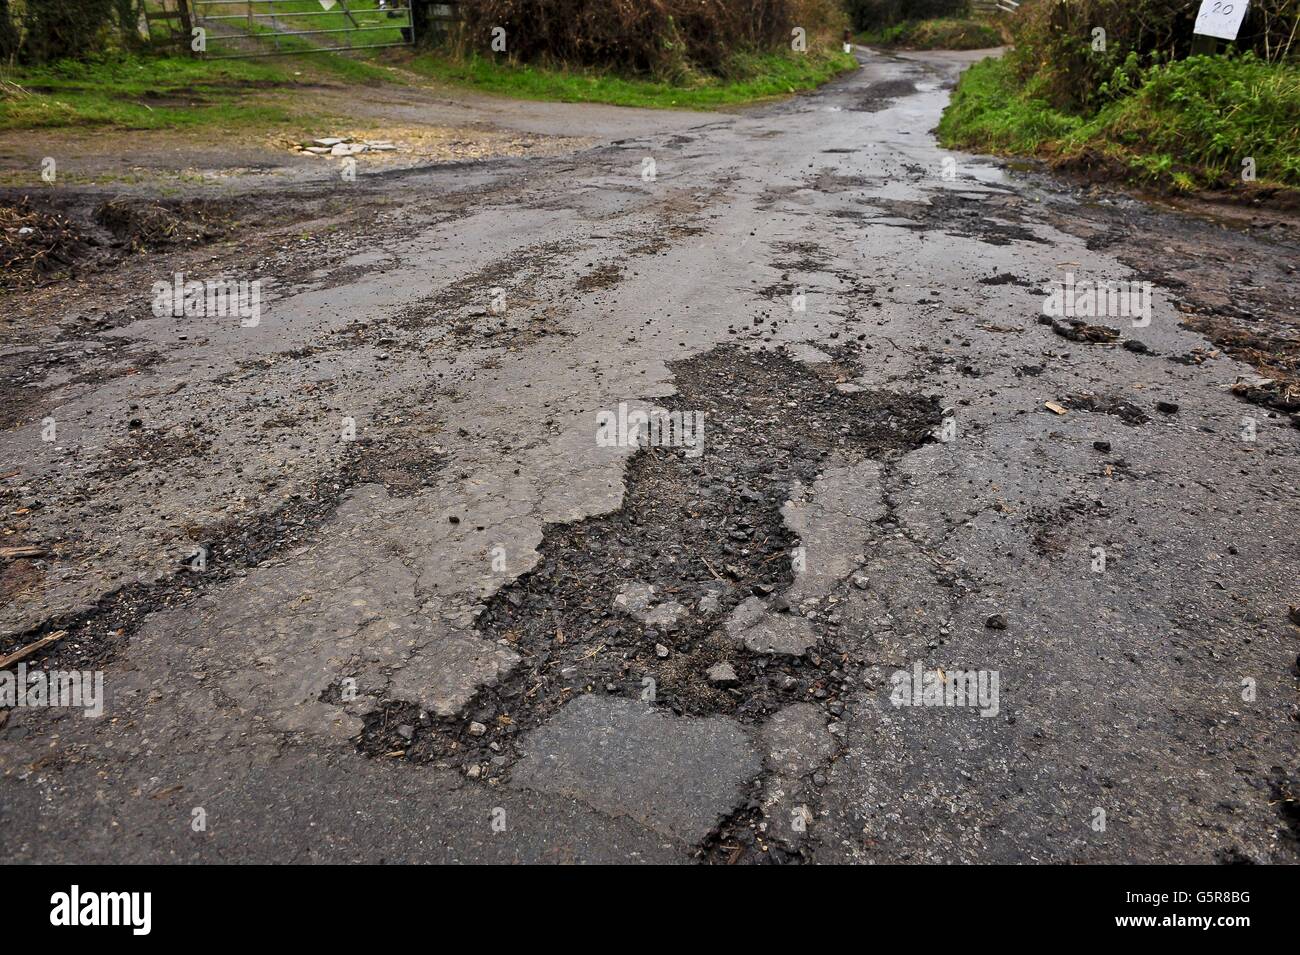 Una superficie de carretera erosionada en una carretera de campo en Gloucestershire, ya que muchas carreteras en el suroeste necesitan reparaciones y trabajos de repavimentación después de un año de fuertes lluvias e inundaciones recientes, creando baches y escombros. Foto de stock